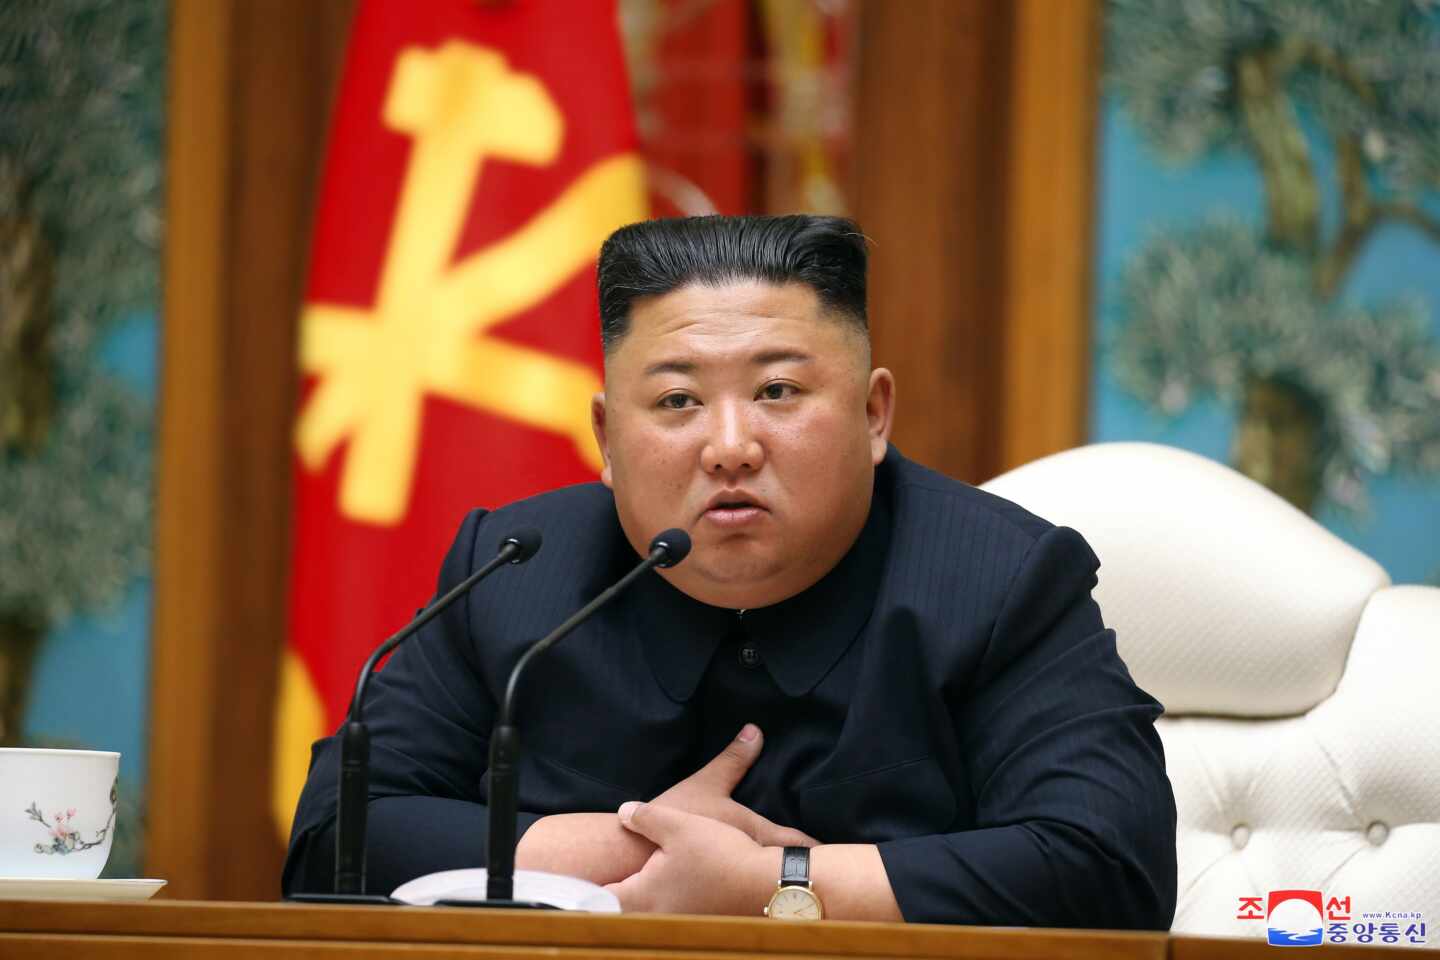 China envía médicos a Corea del Norte mientras crecen los rumores sobre la salud de Kim Jong Un